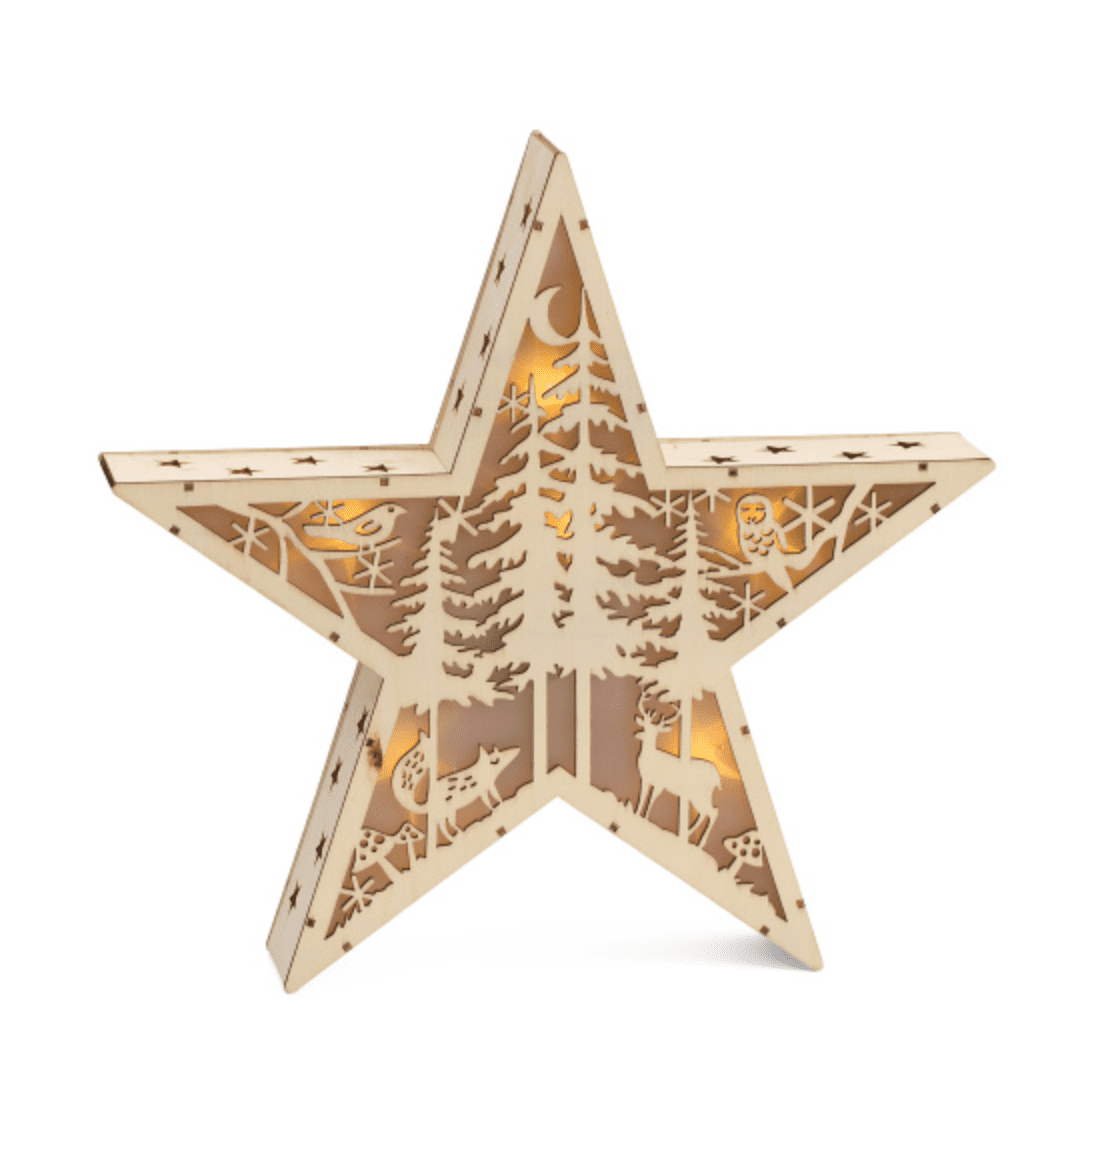 Estrela decorativa de madeira esculpida da T.J. Maxx com iluminação em um fundo branco em branco